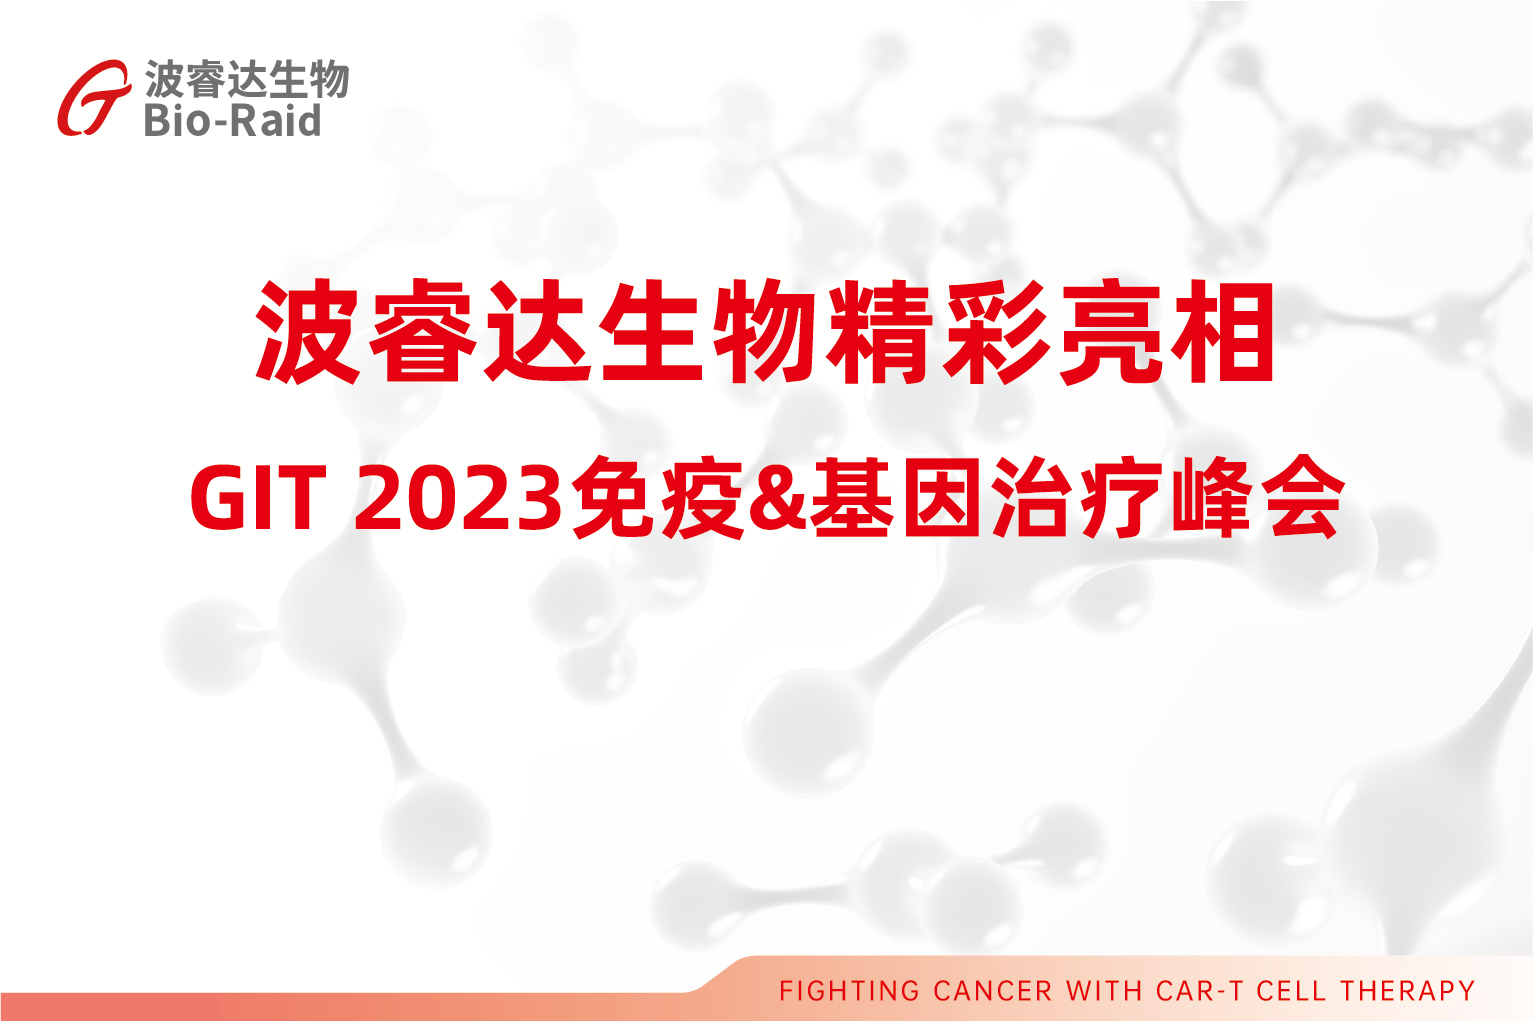 波睿达生物精彩亮相GIT 2023免疫&基因治疗峰会